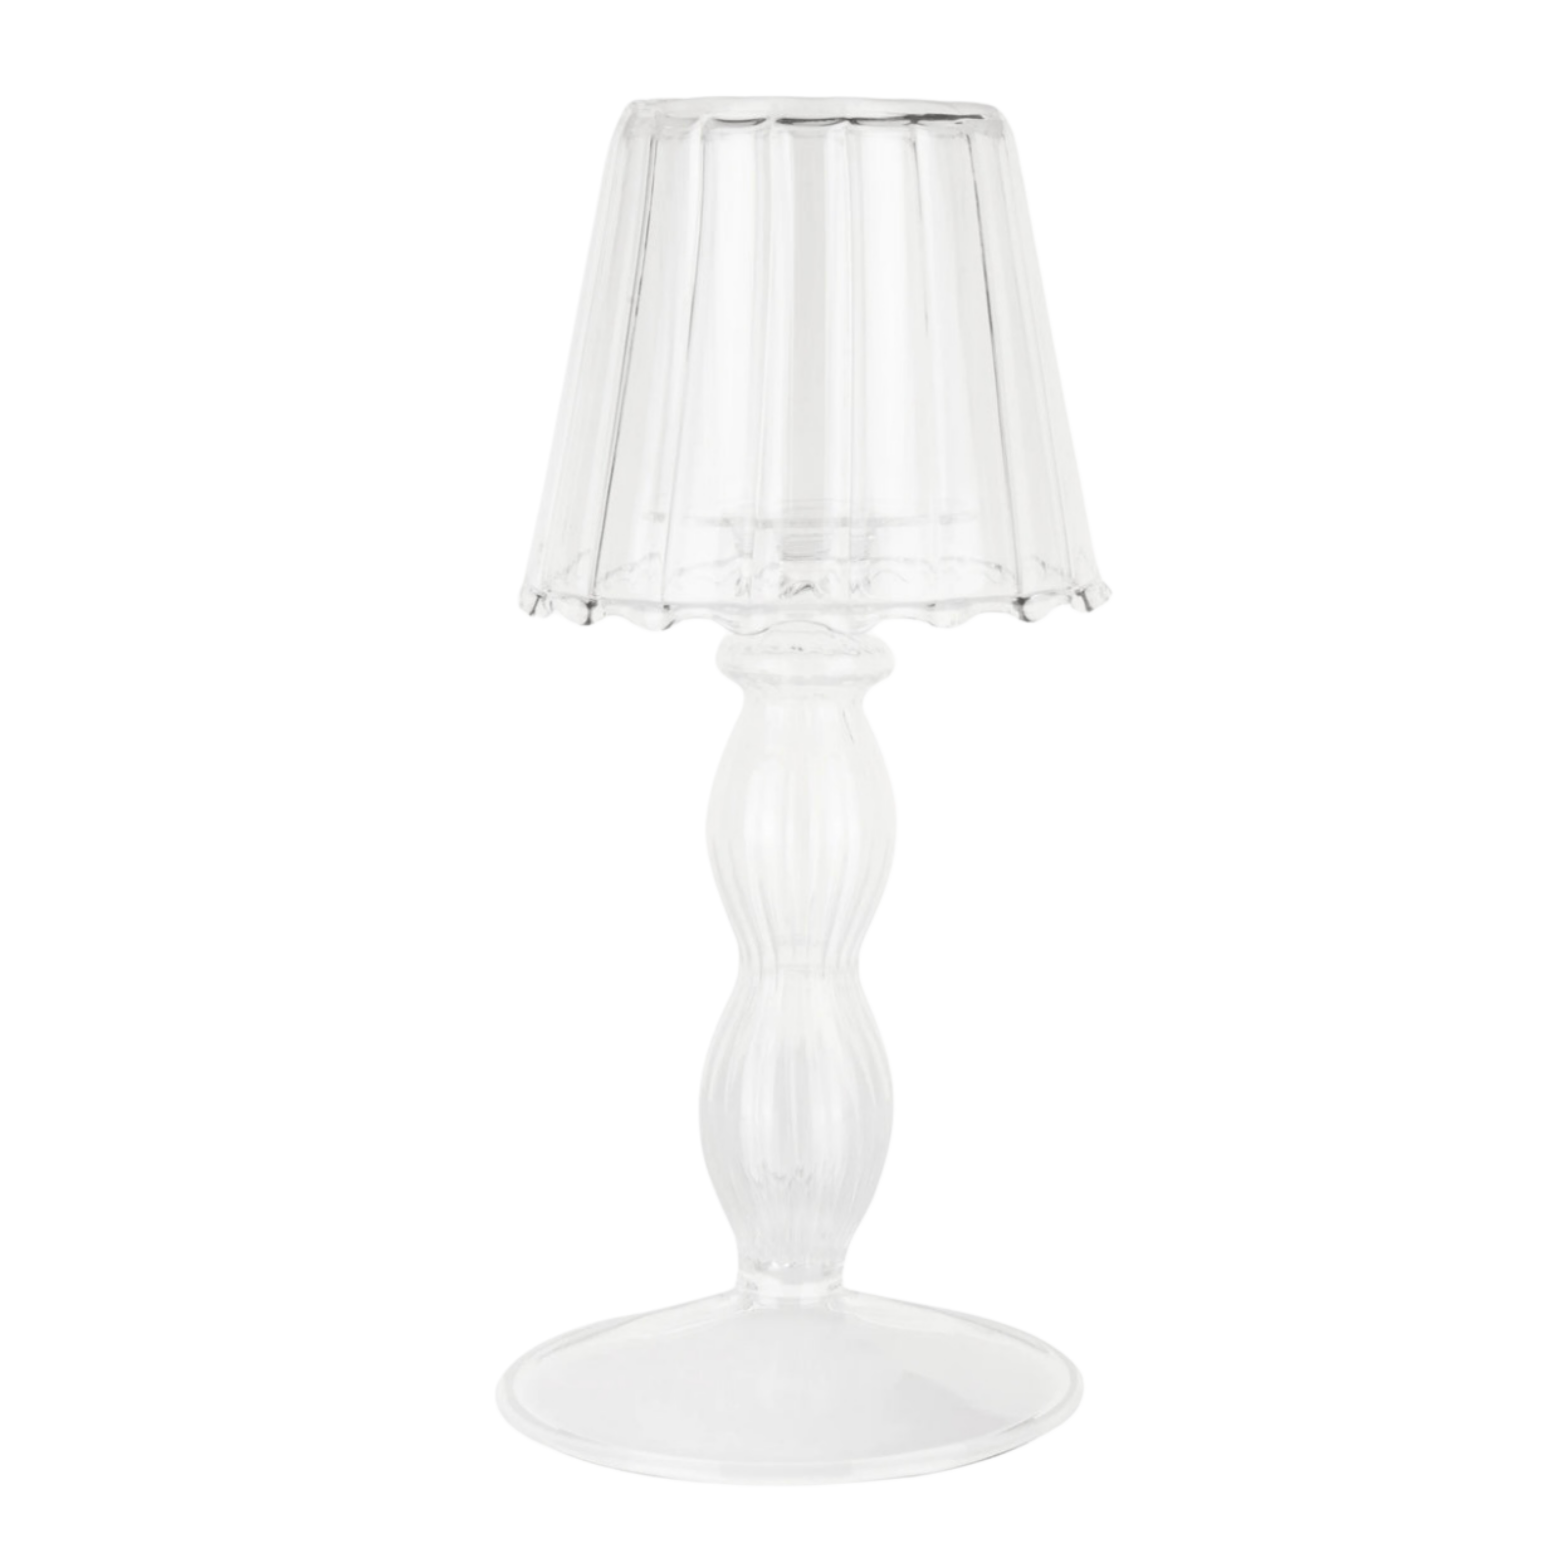 Glass Ruffle T-light lamp